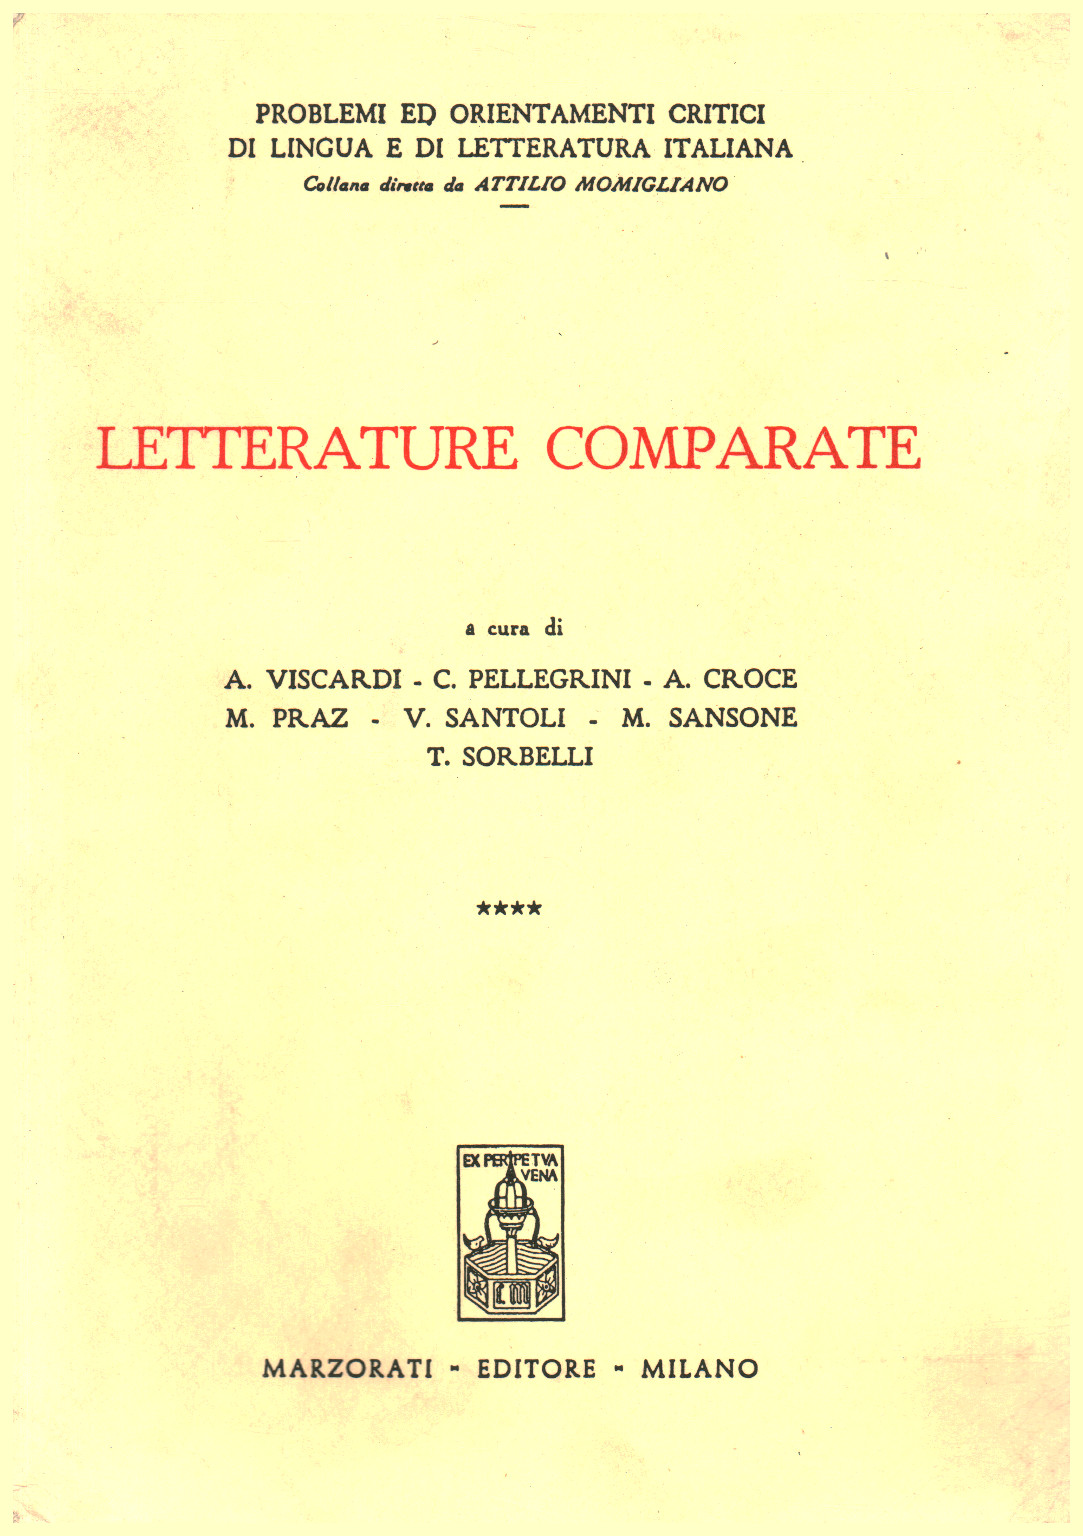 Letterature comparate, s.a.